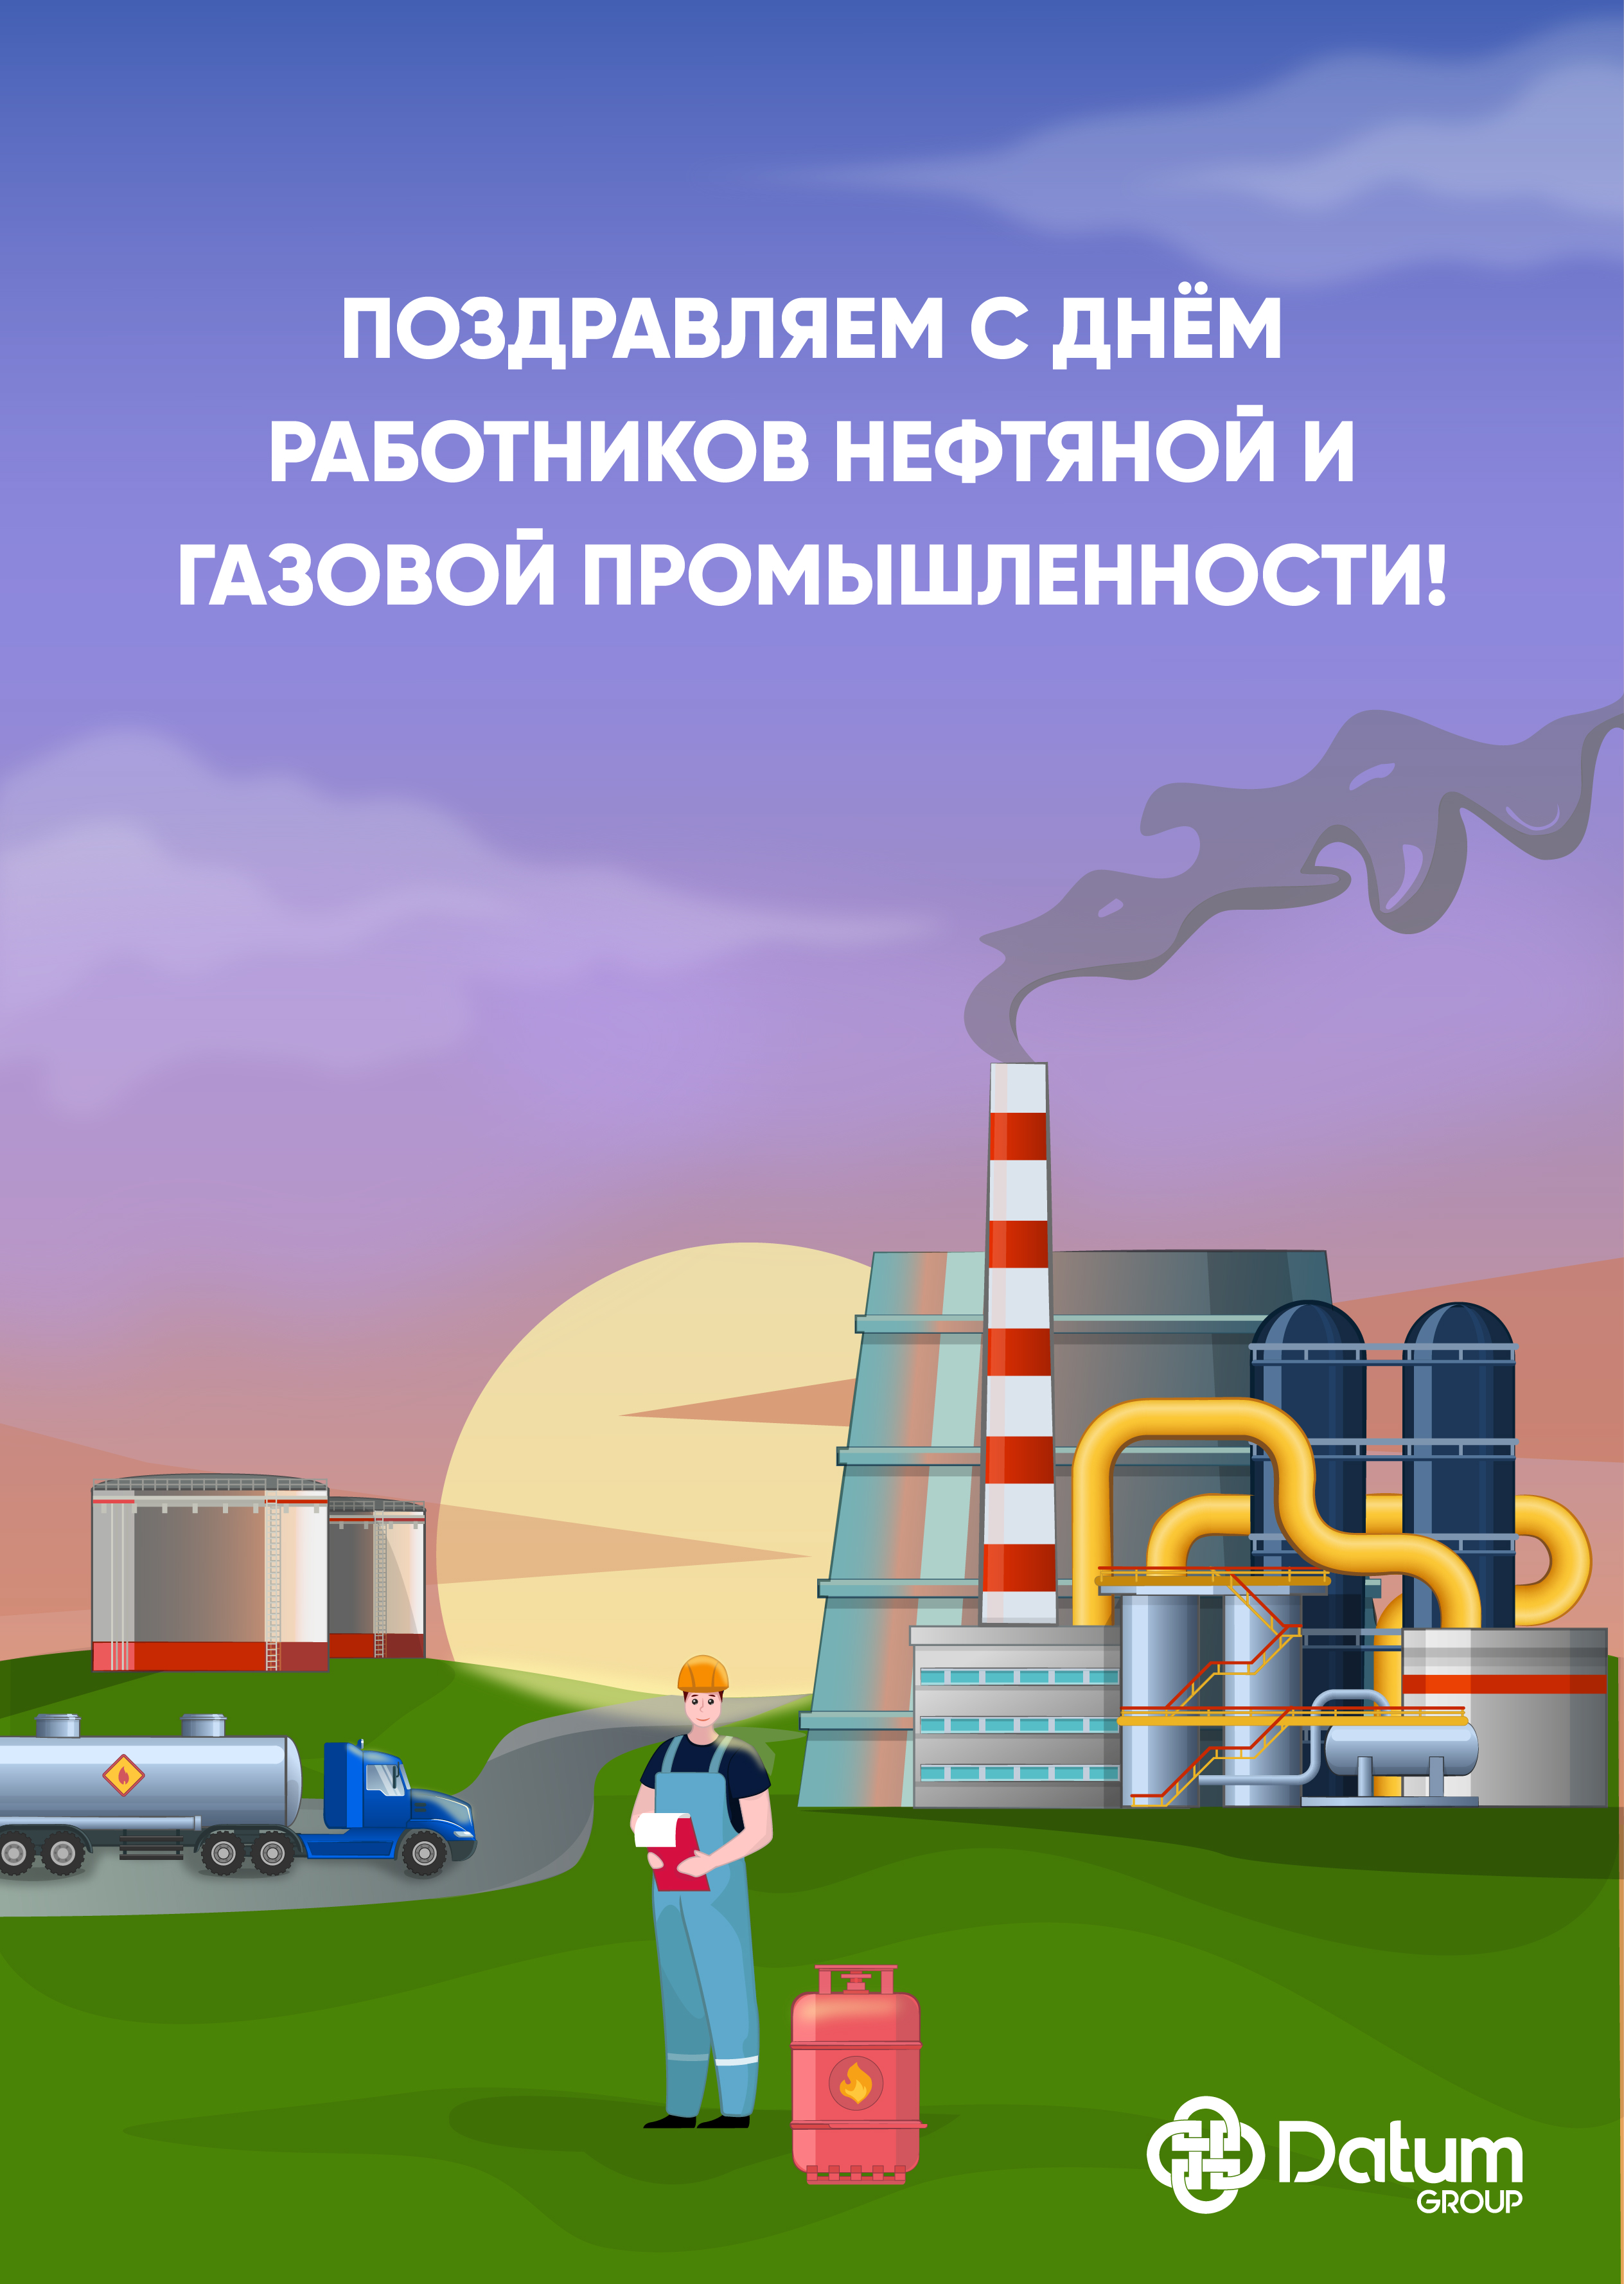 Нефтегазстройпрофсоюз России поздравляет с Днем работников нефтяной и газовой промышленности